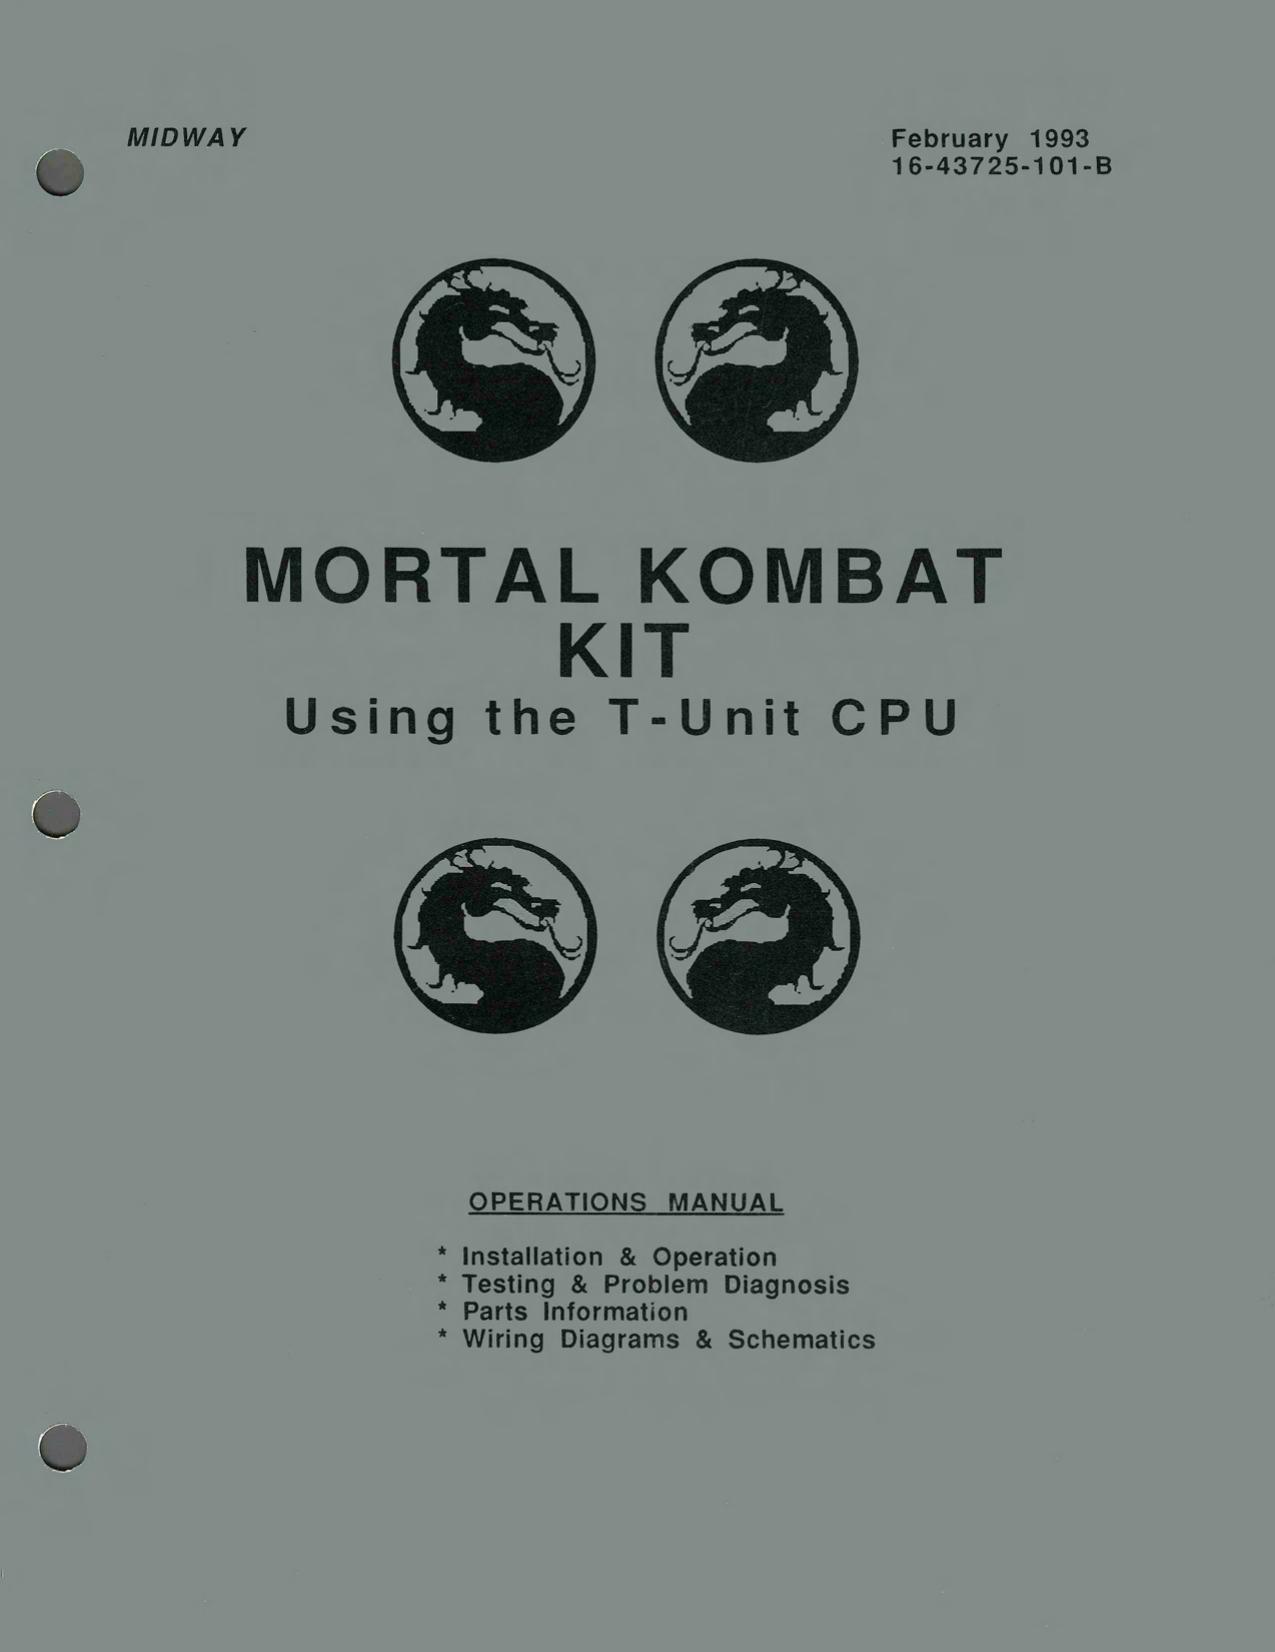 Mortal Kombat 1 Kit T-Unit CPU (16-43275-101-B Feb 1983)